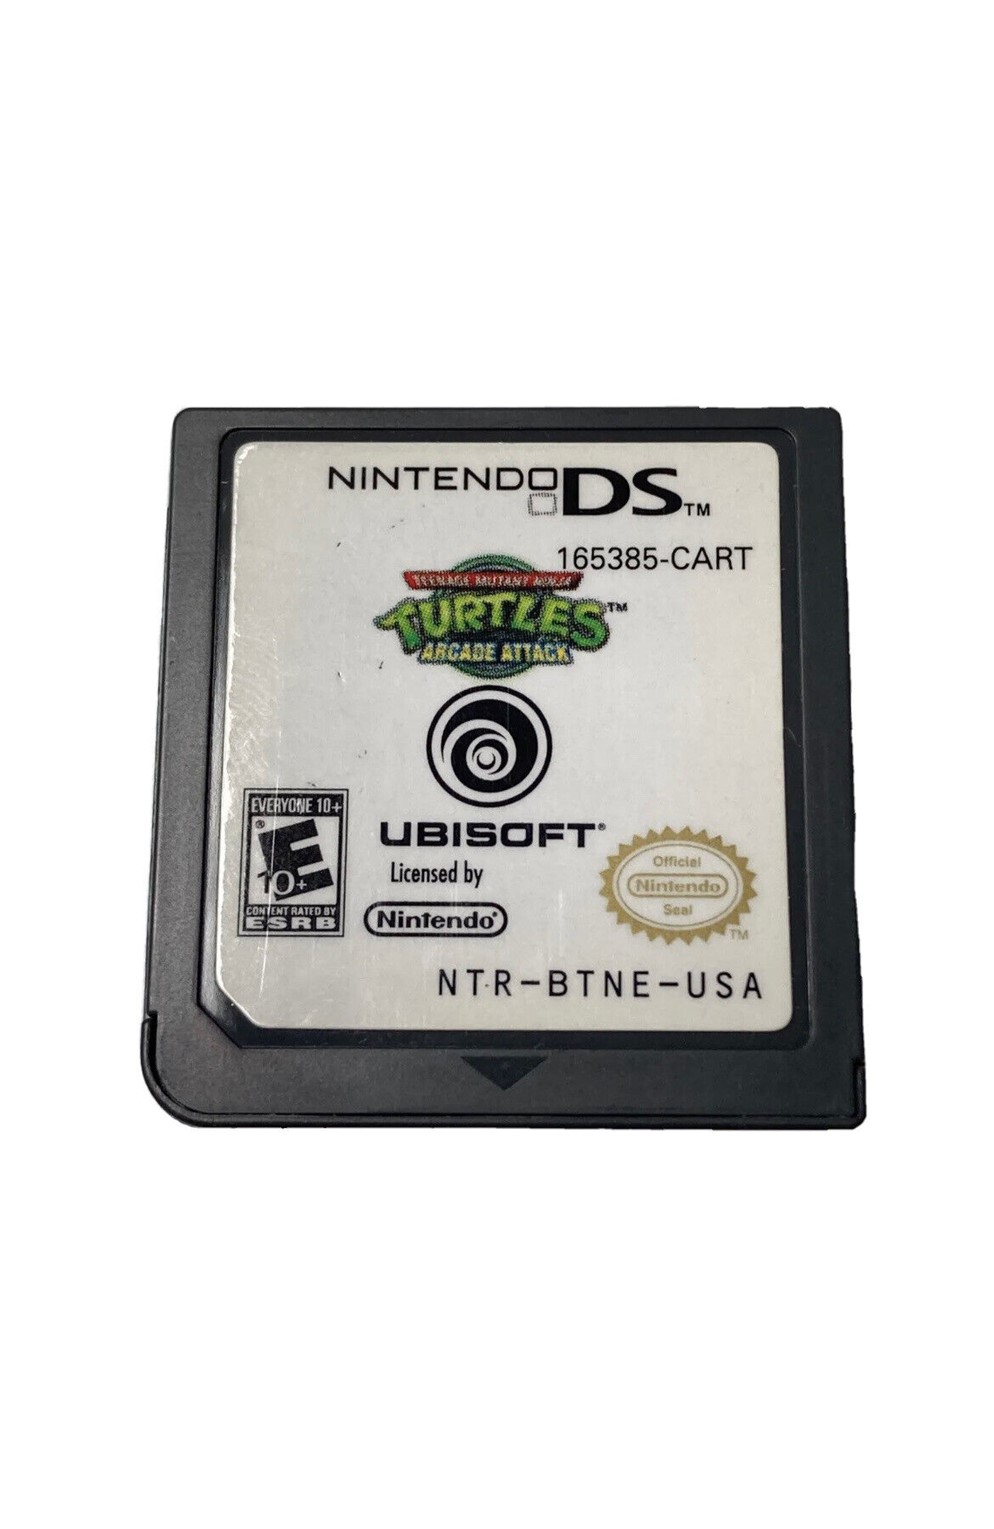 Nintendo Ds Teenage Mutant Ninja Turtles Arcade Attack 